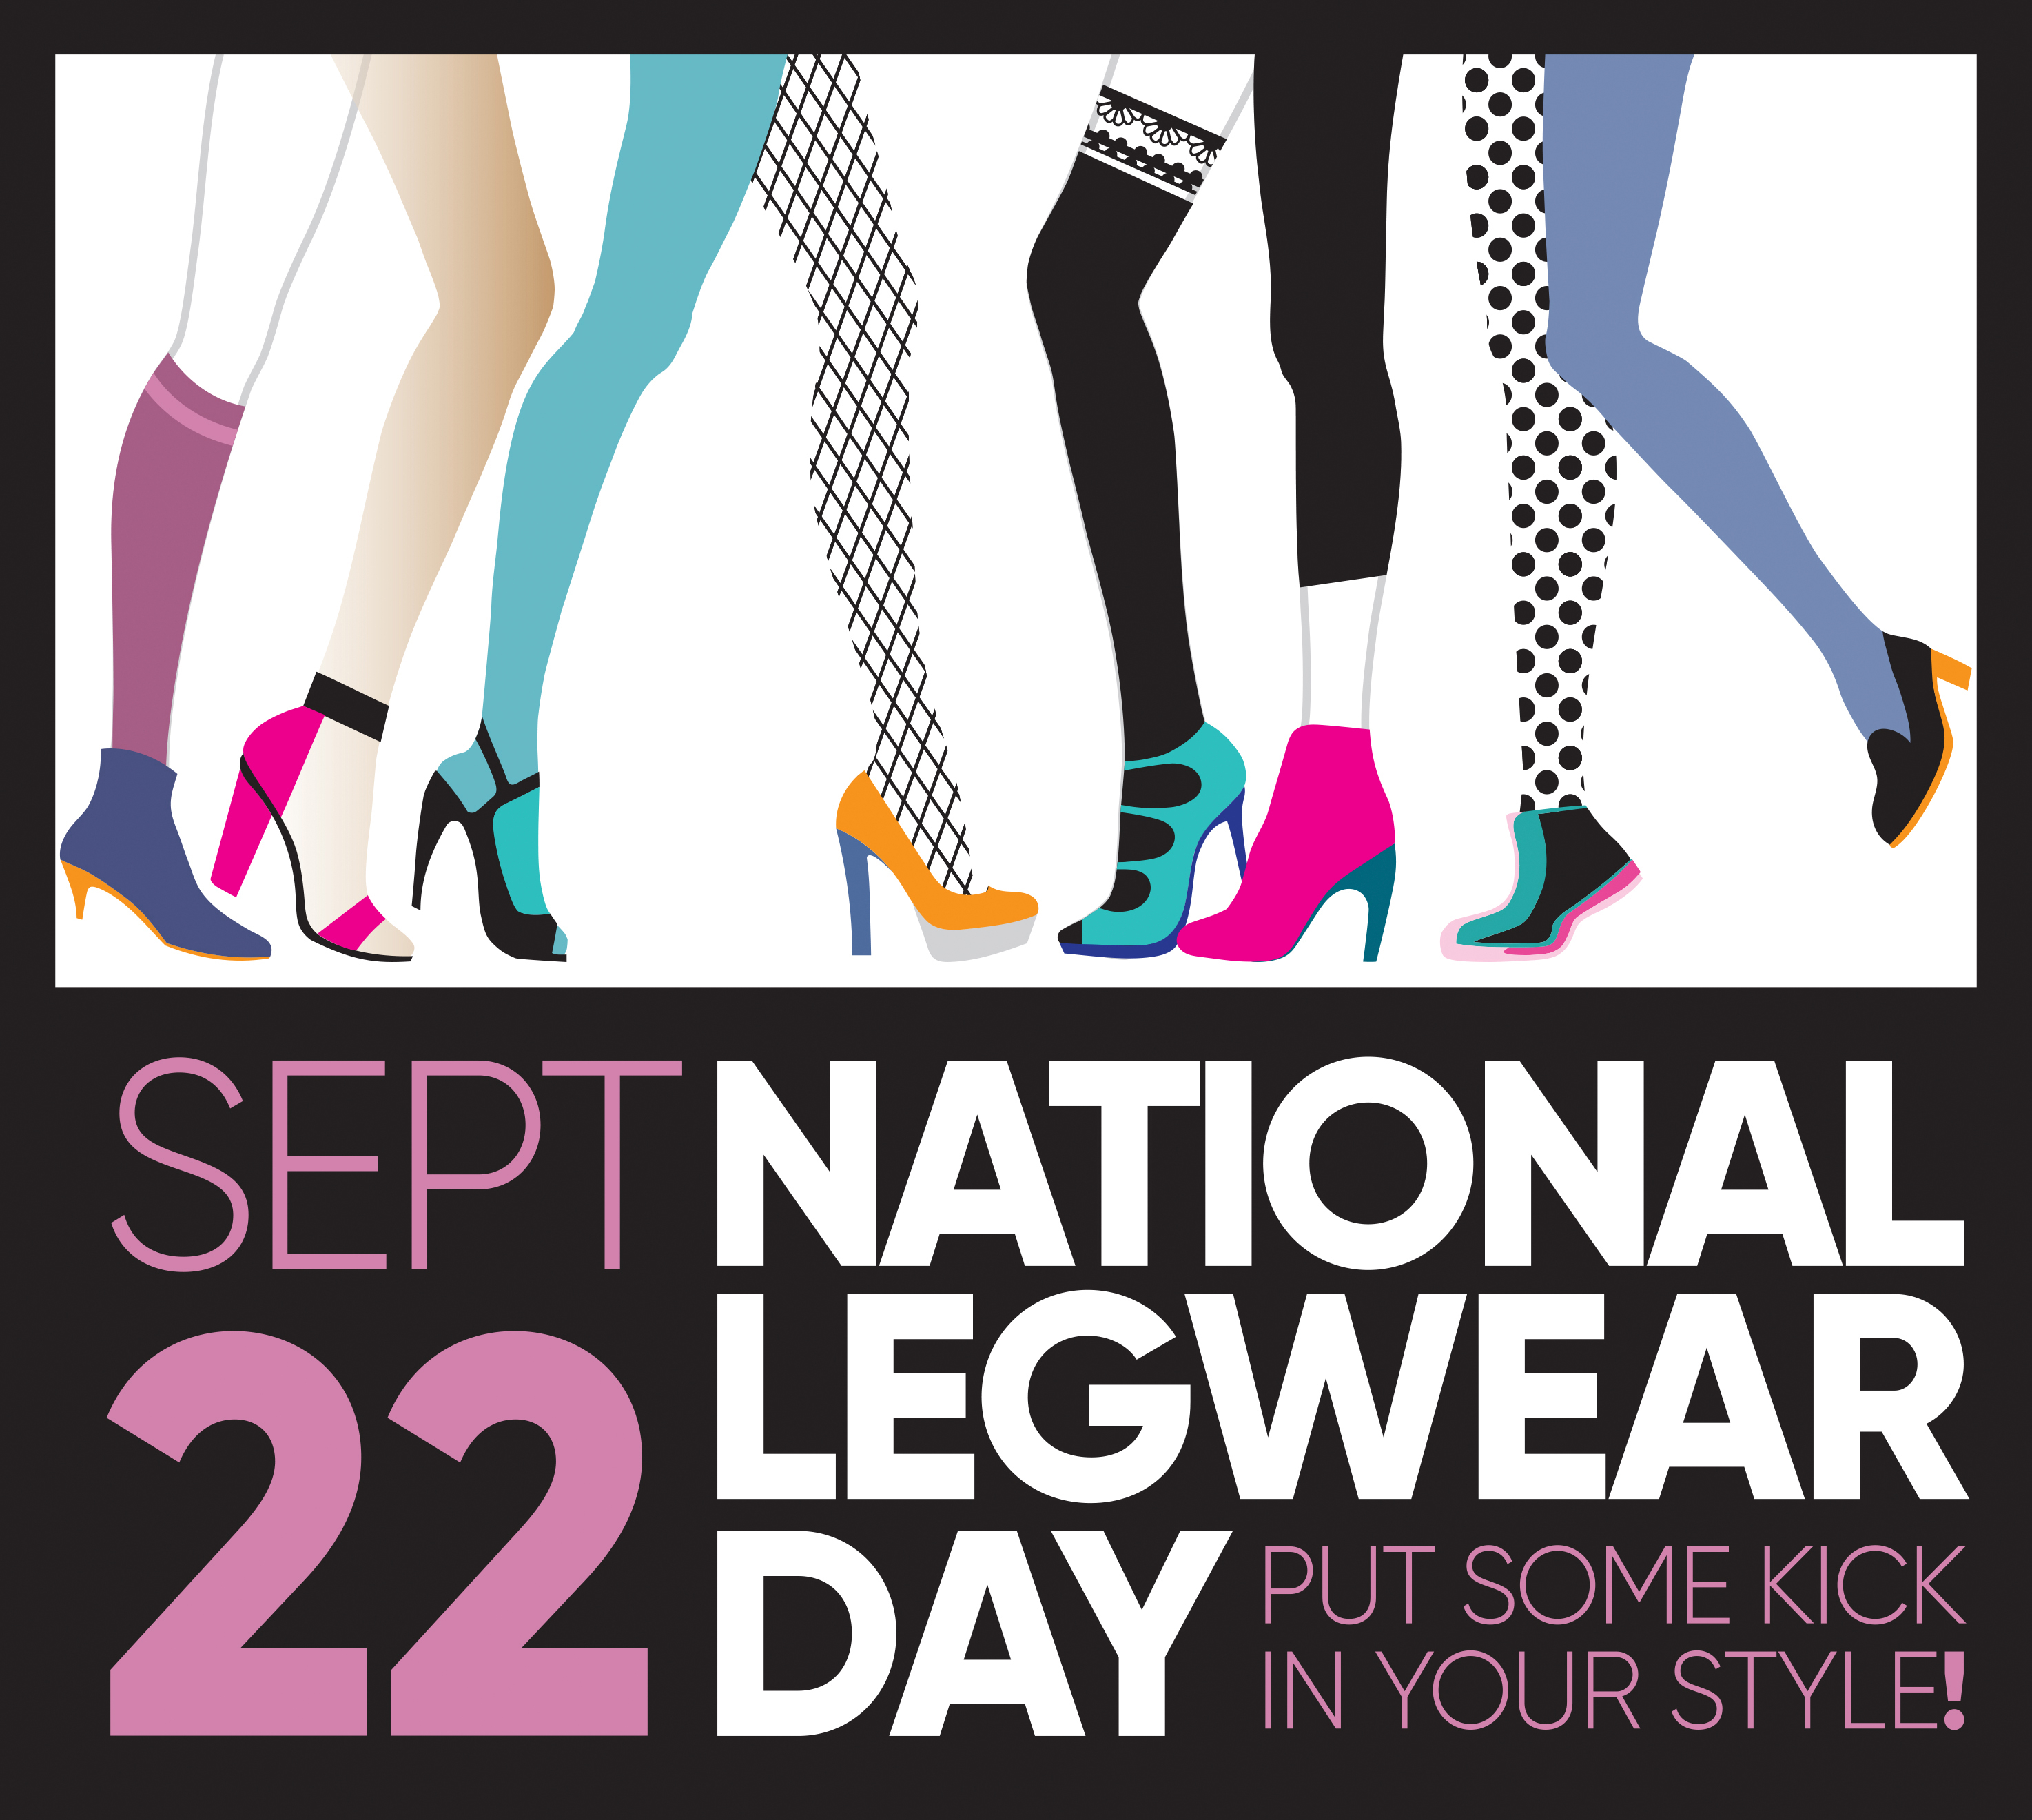 L'eggs® Kicks off Third Annual National Legwear Day